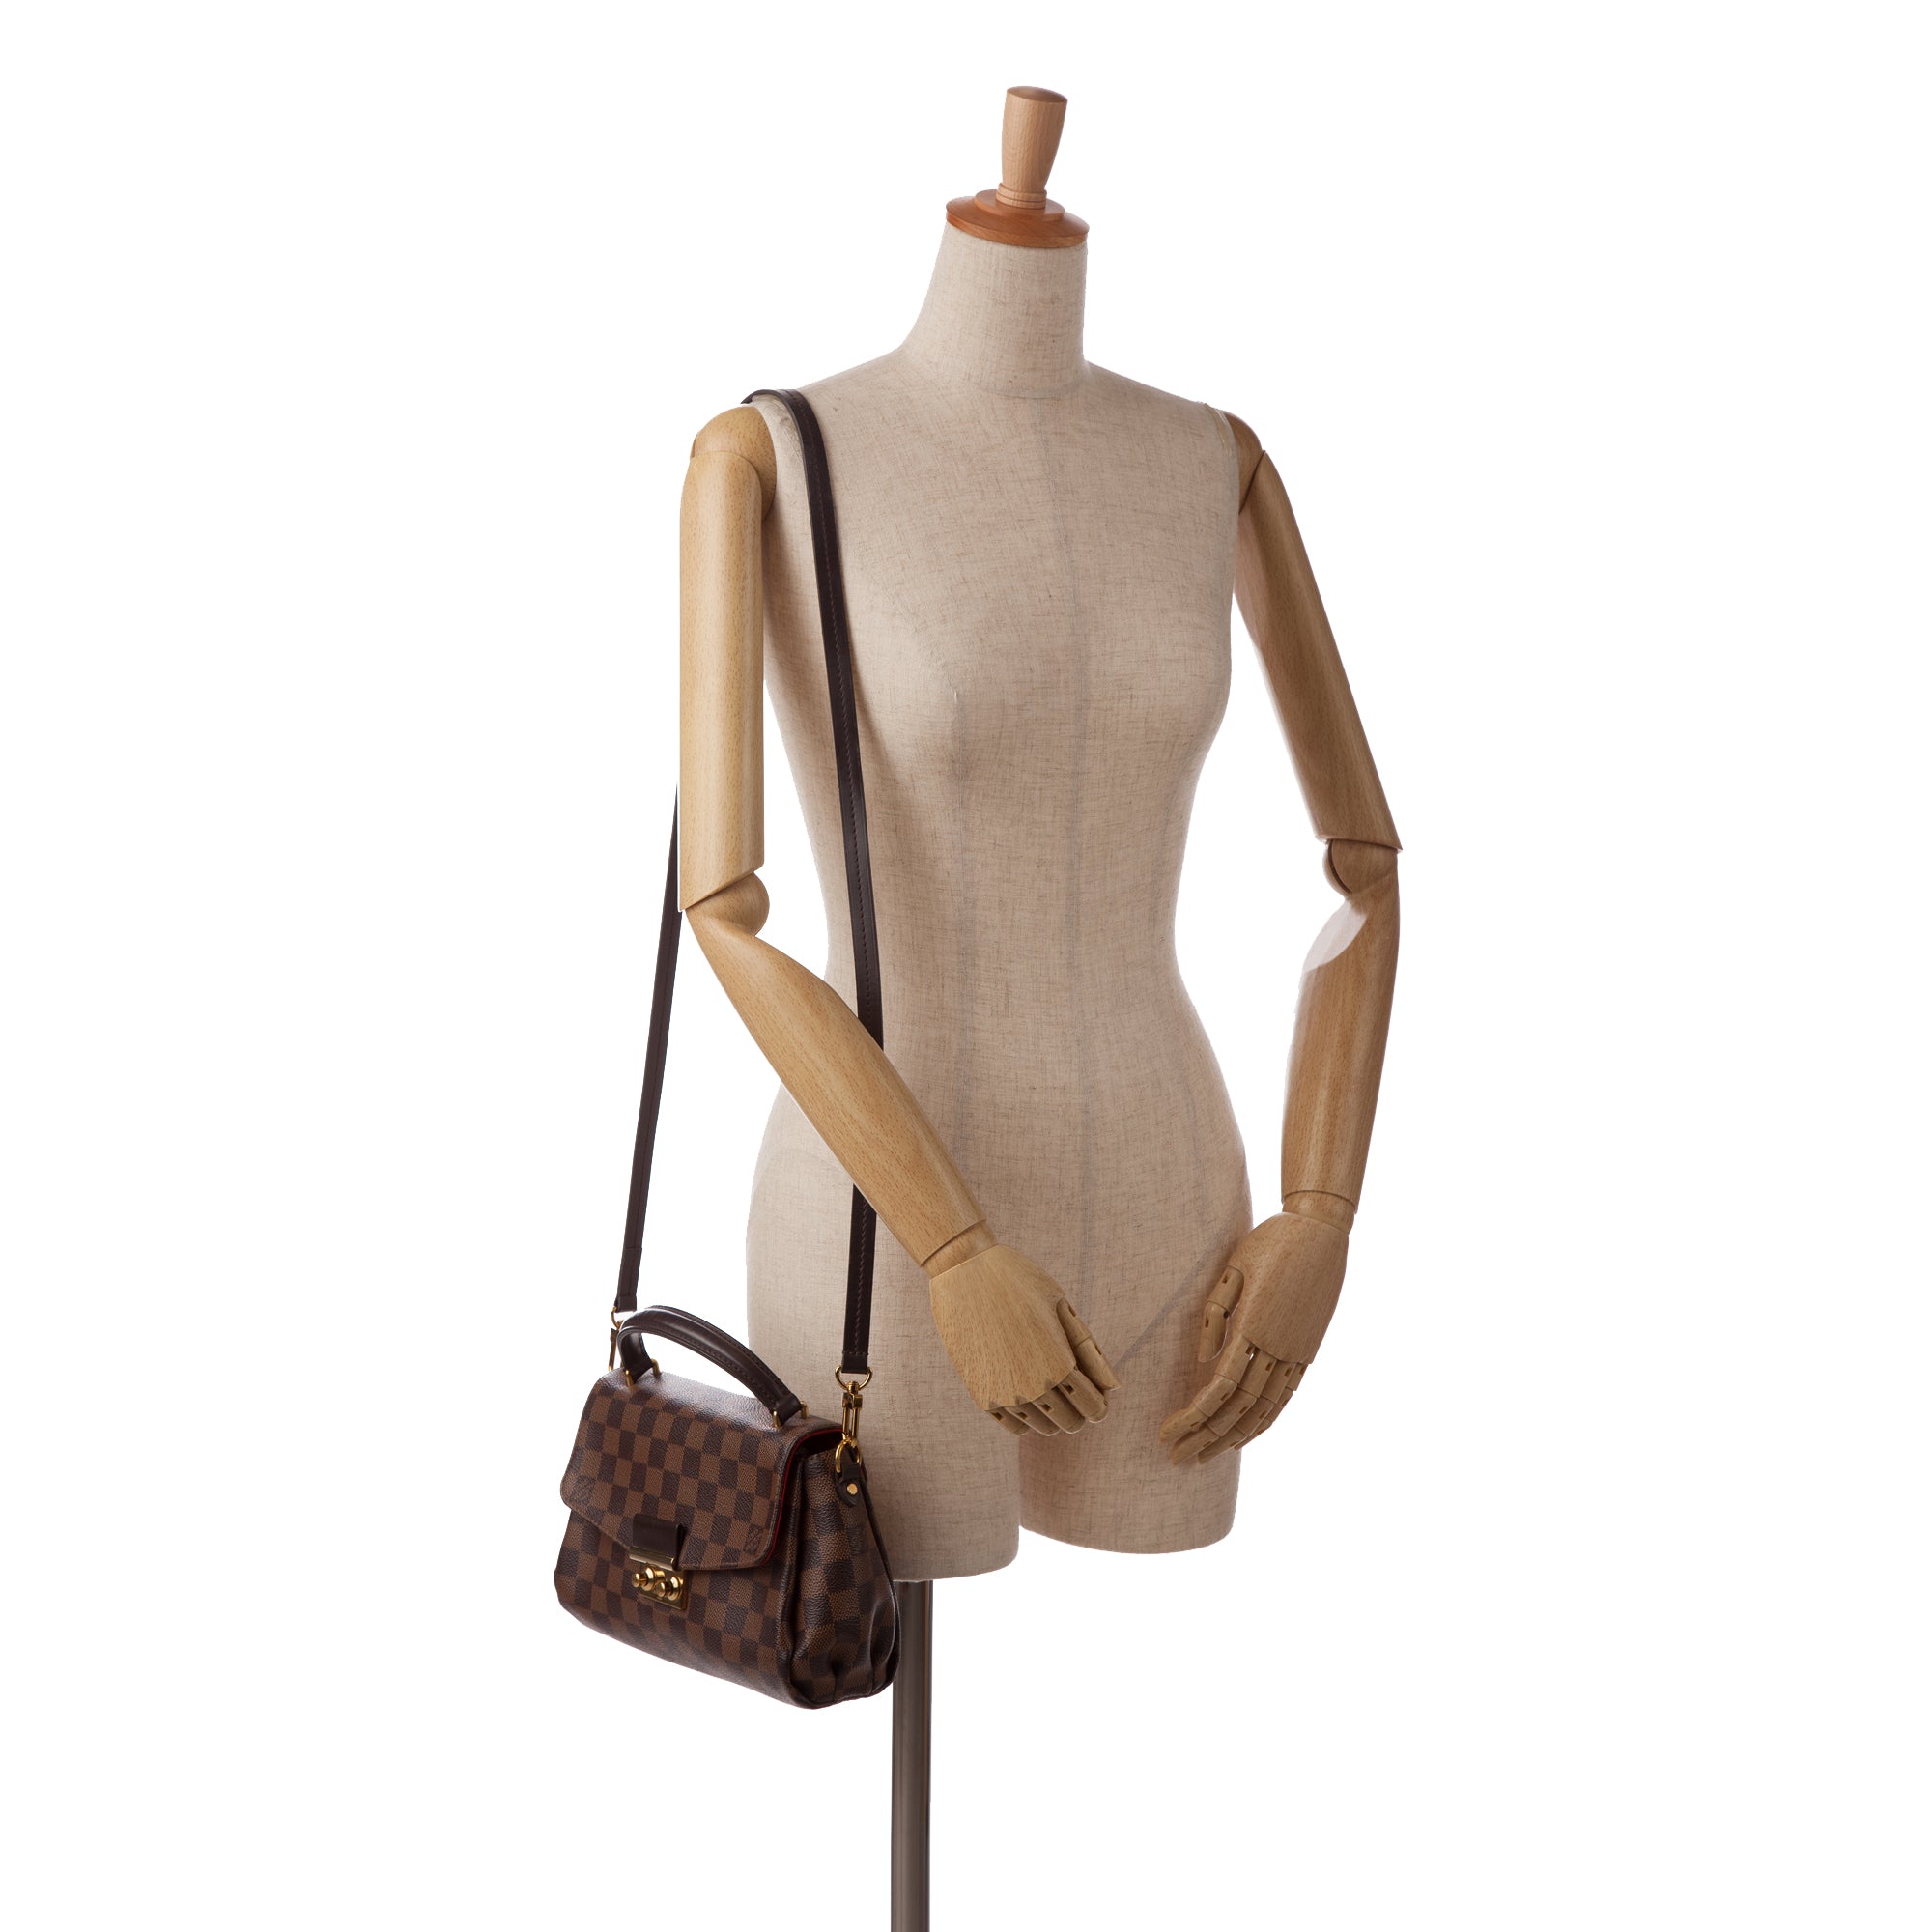 Louis Vuitton Damier Ebene Croisette Shoulder Bag - FINAL SALE